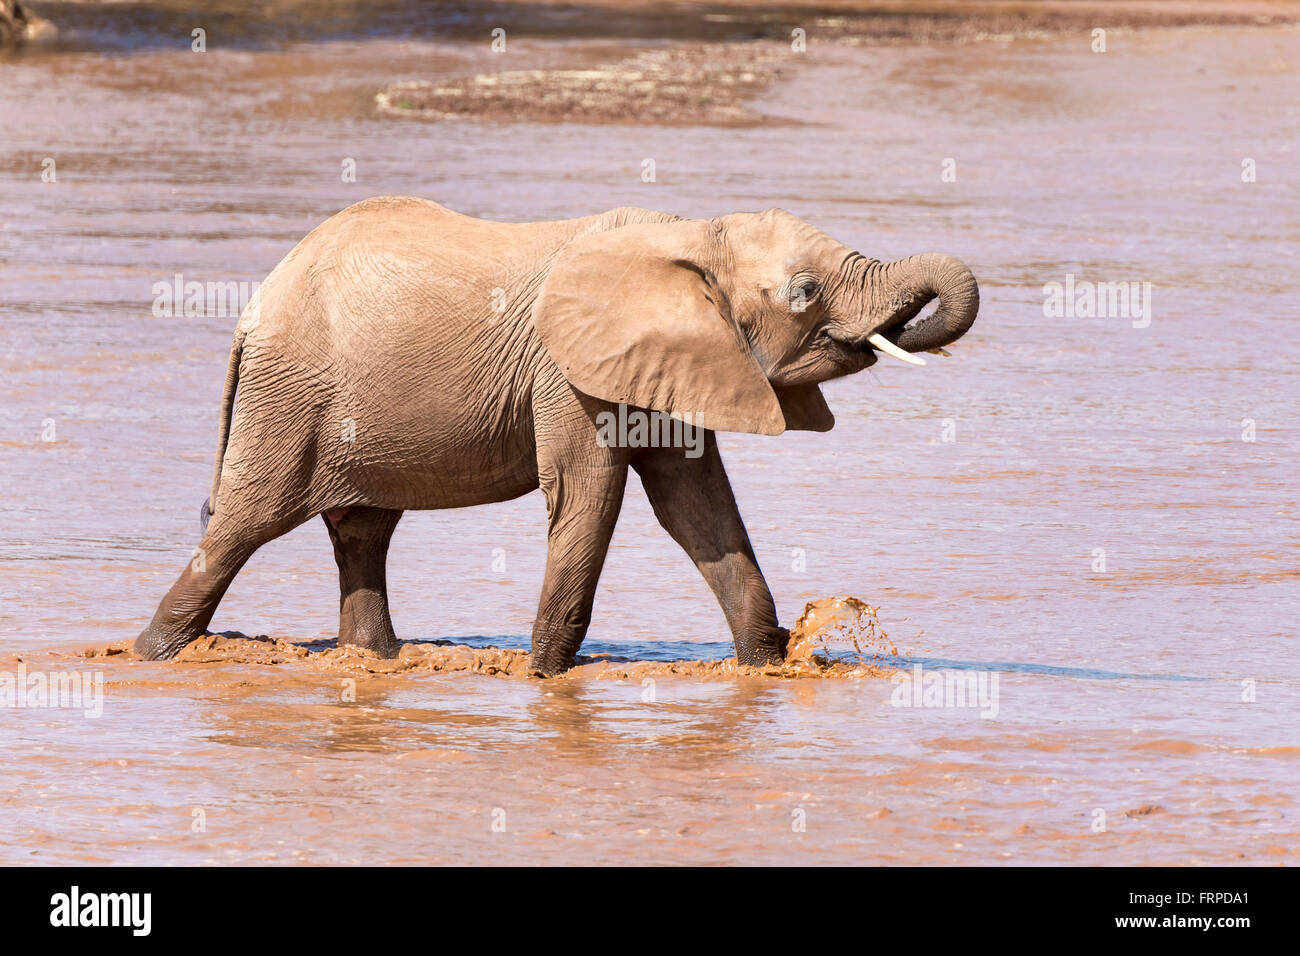 L'éléphant africain (Loxodonta africana), veaux traversant une rivière, la réserve nationale de Samburu, Kenya Banque D'Images